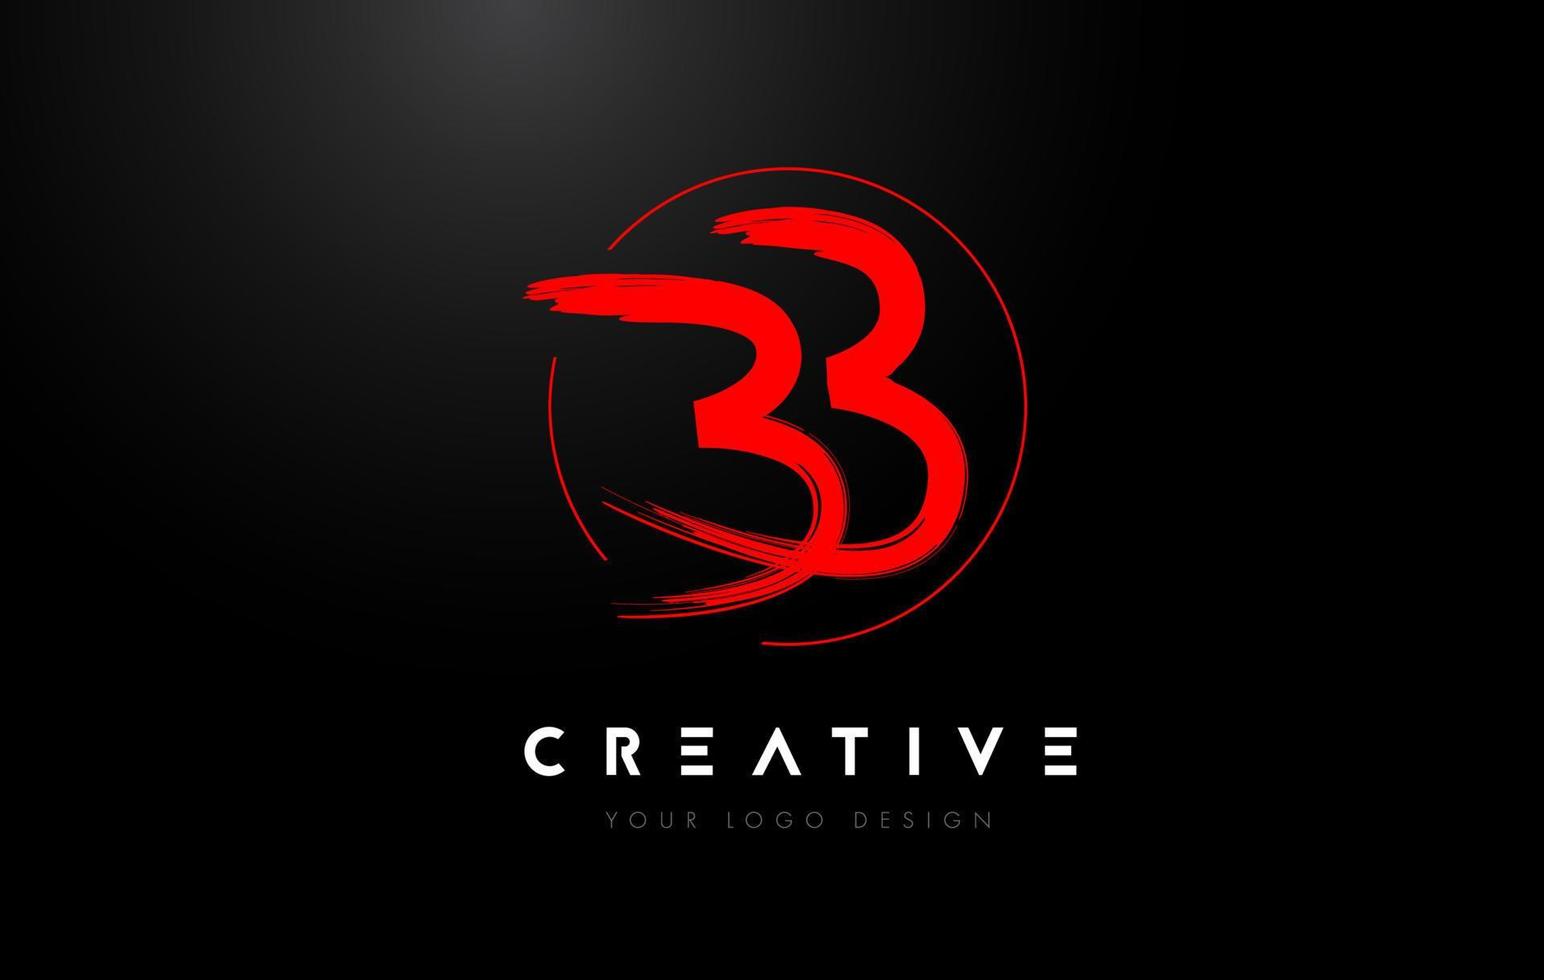 création de logo de lettre de brosse bb rouge. concept artistique de logo de lettres manuscrites. vecteur